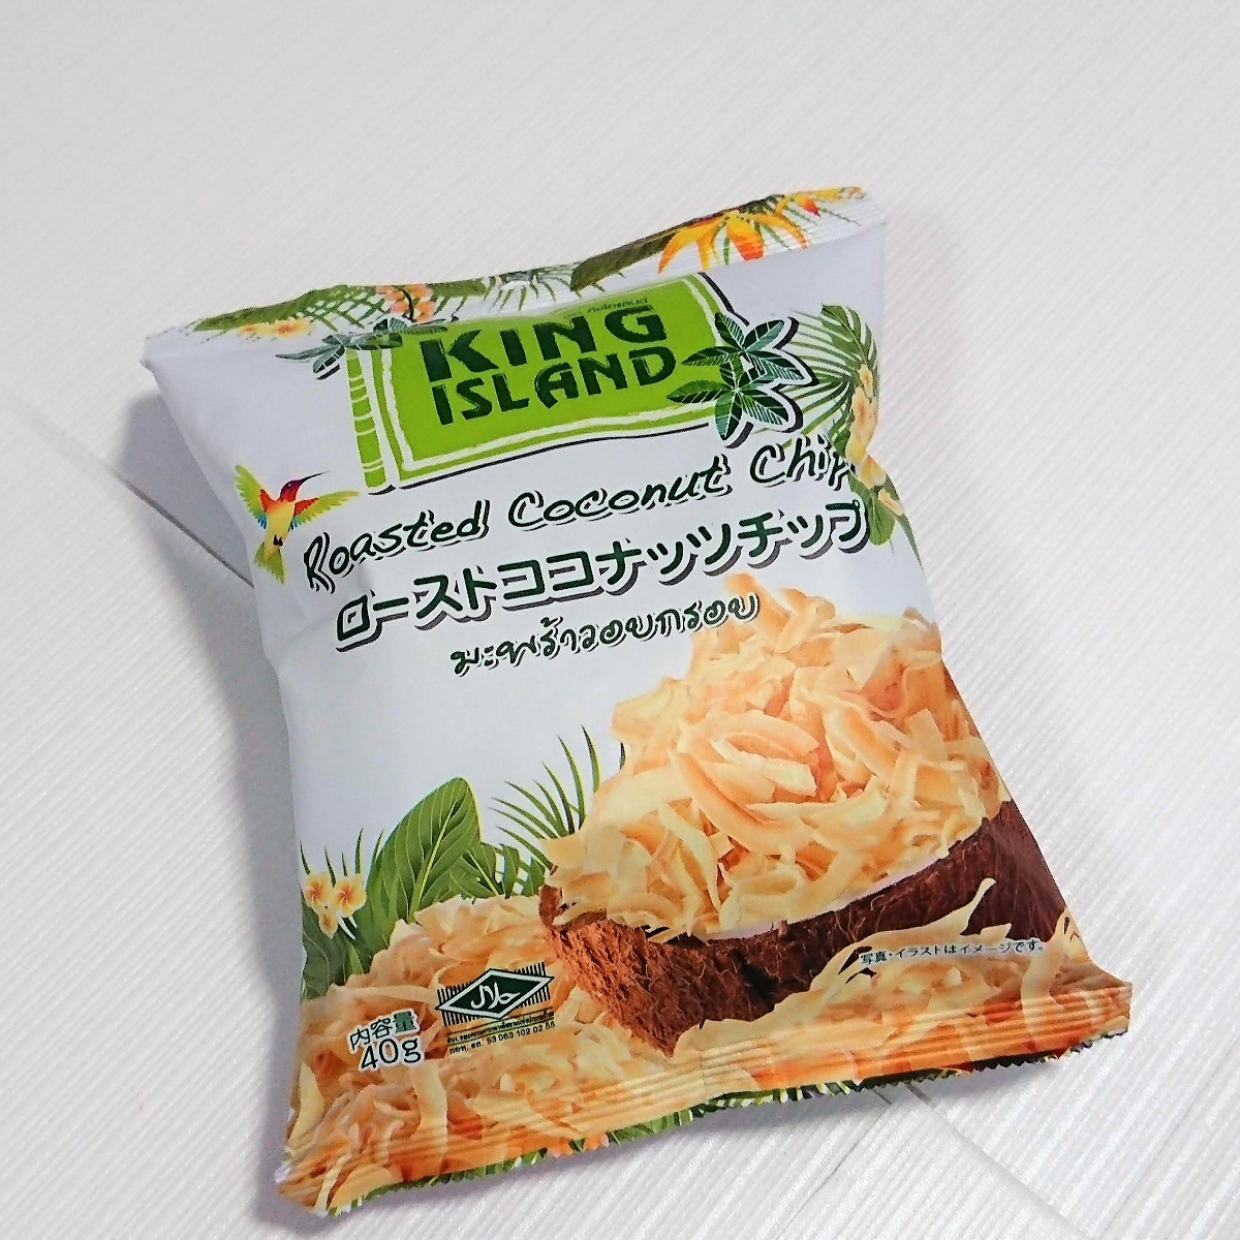  【業務スーパー】98円の「ローストココナッツチップ」は食べ始めたら止まらなくなる美味しさ♡ 